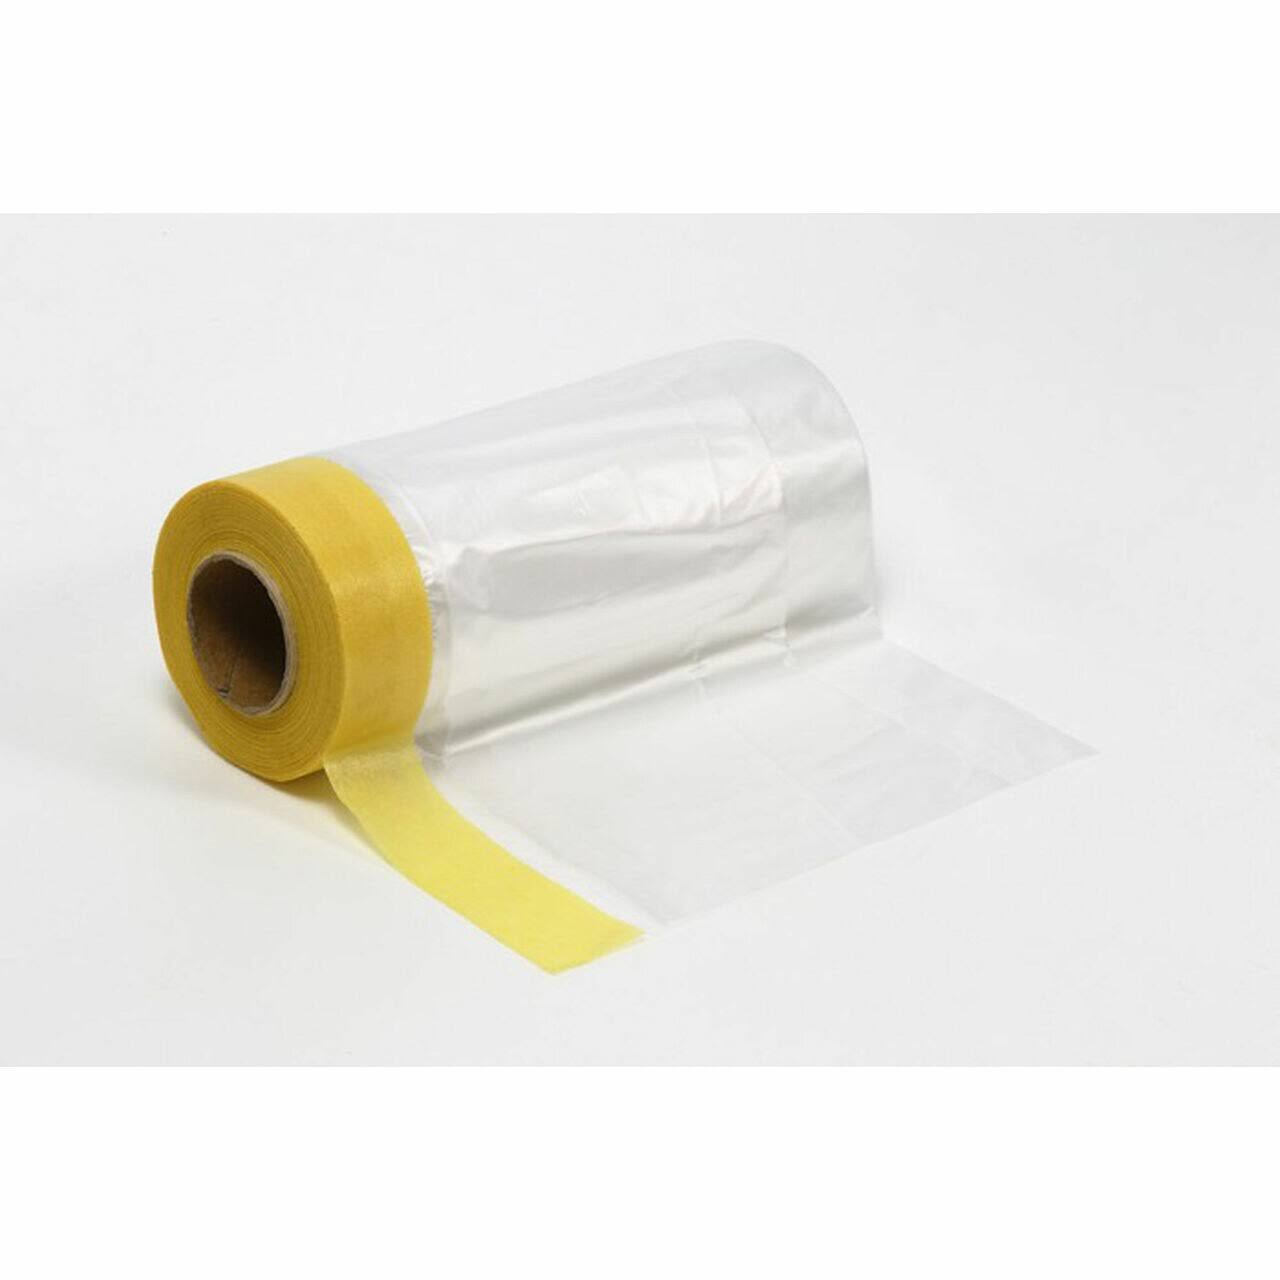 Tamiya Masking Tape & Plastic Sheeting - 550mm